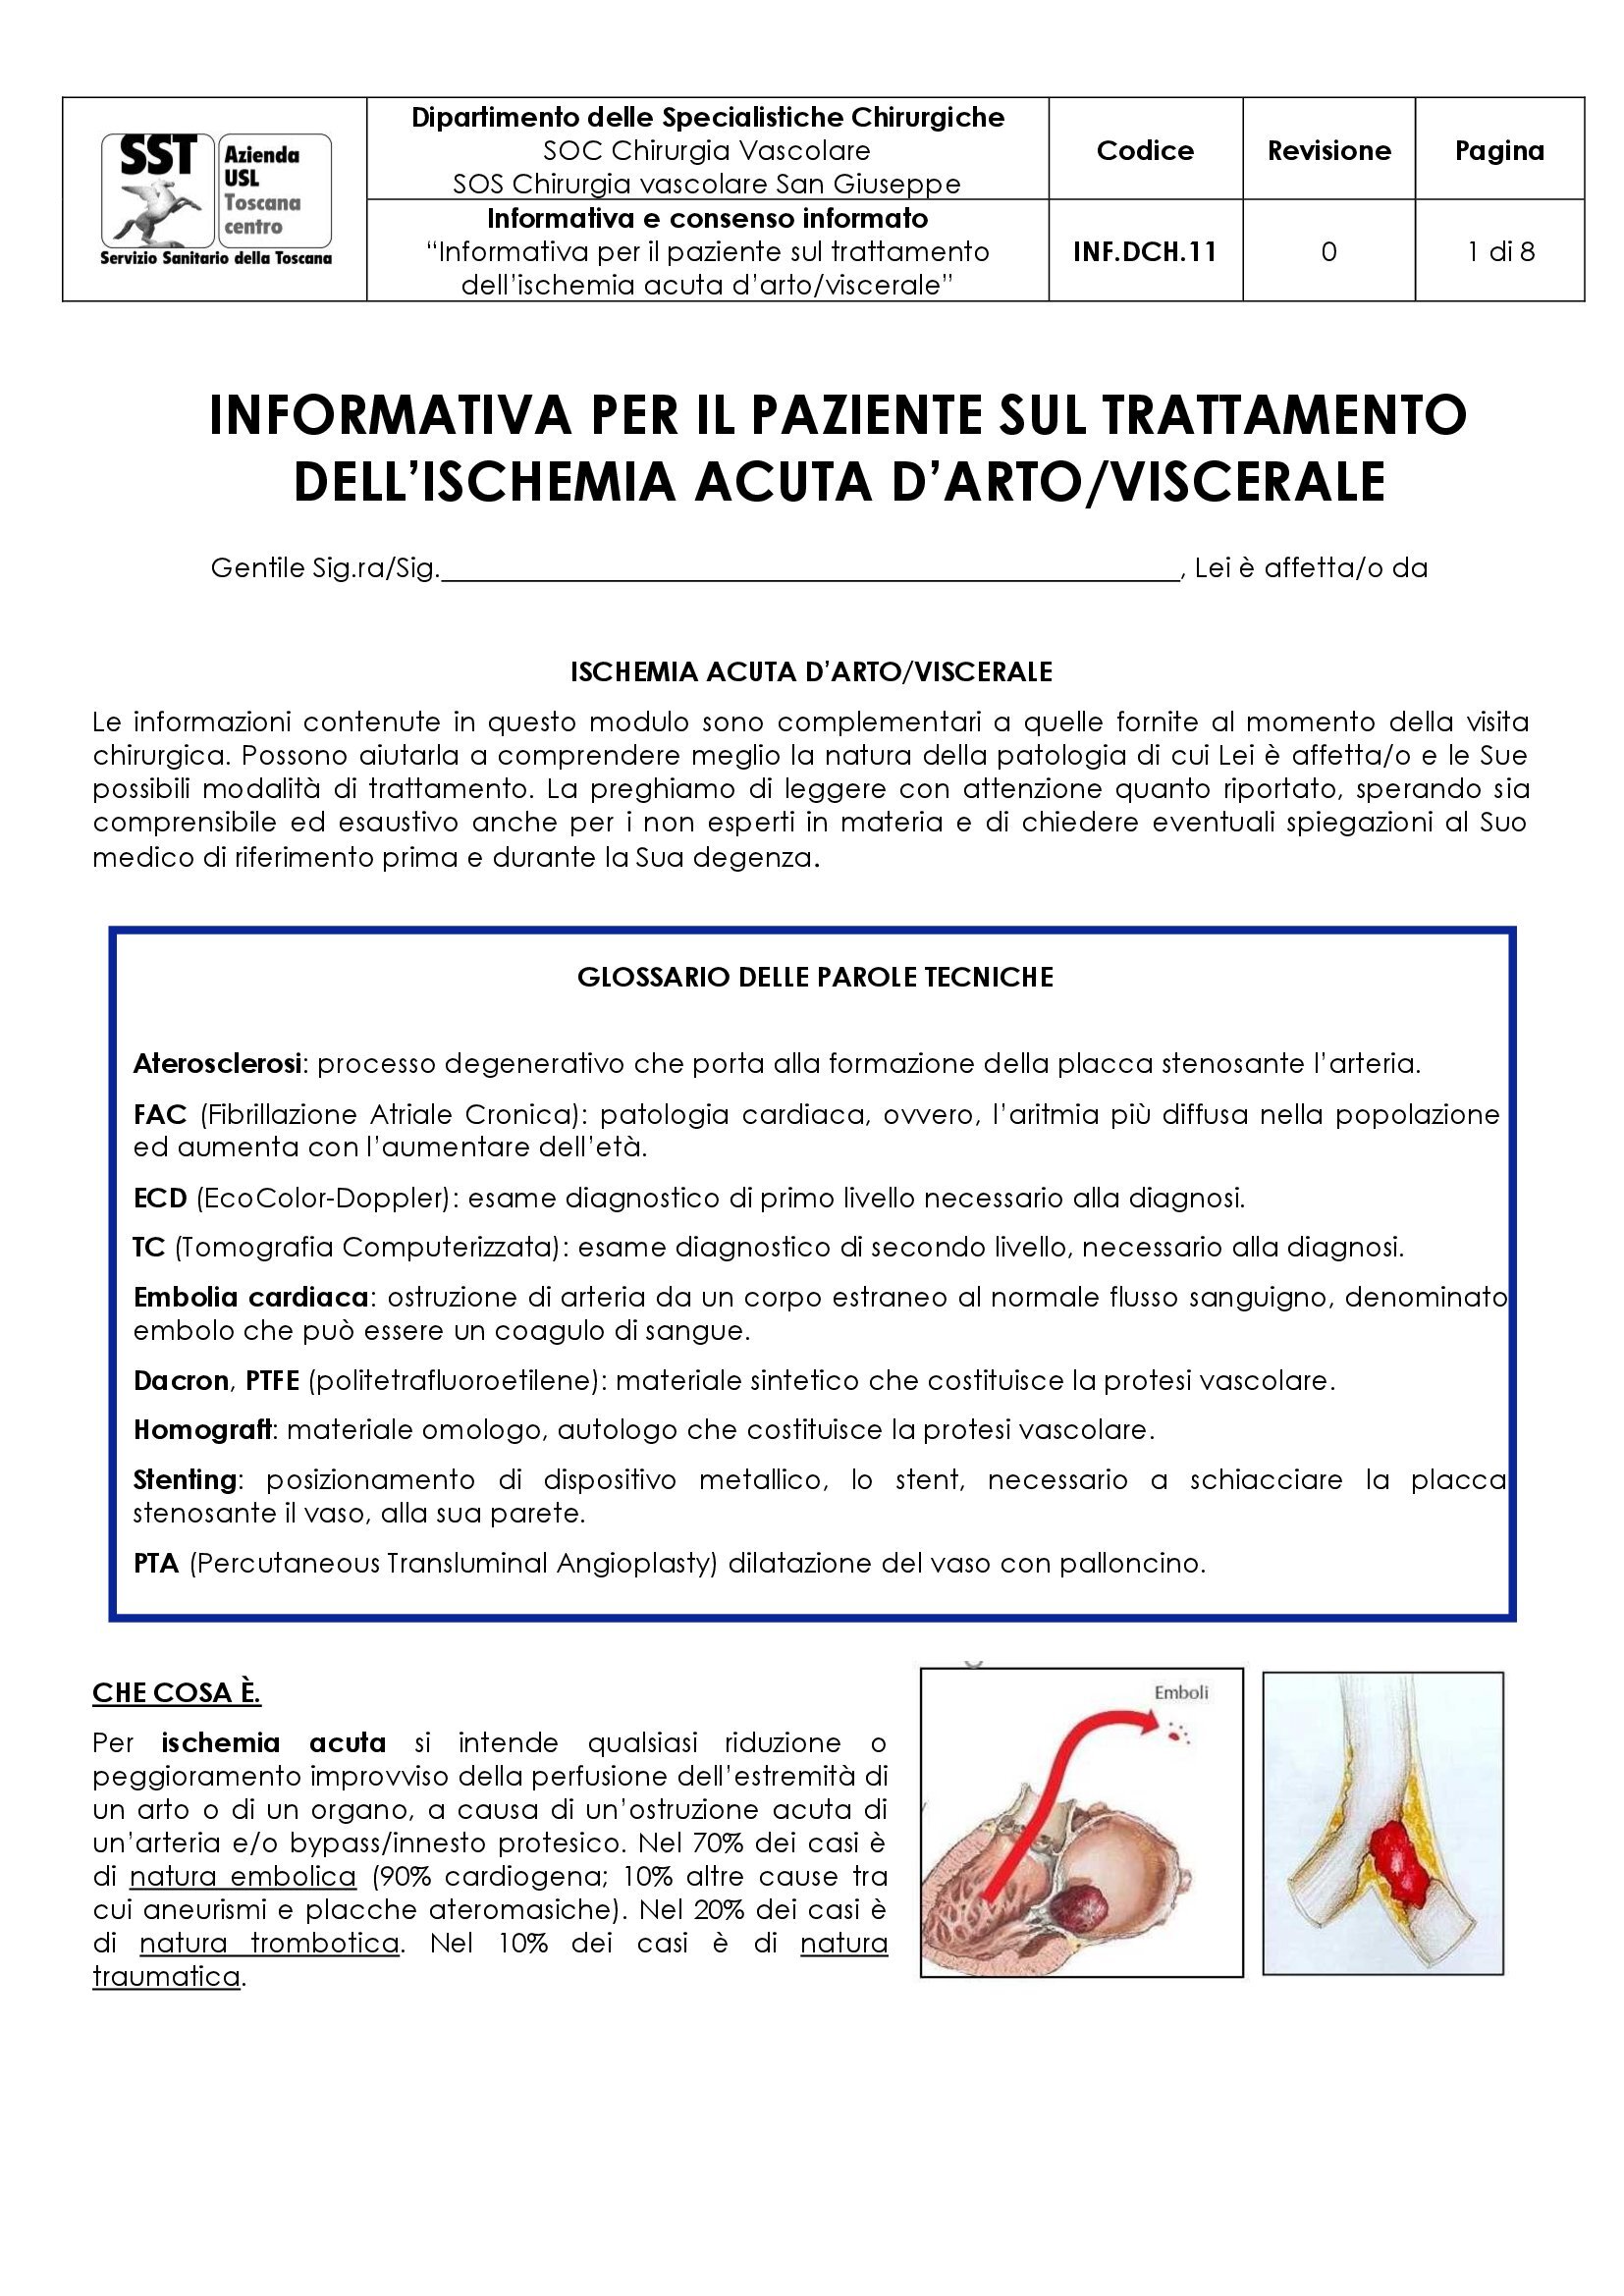 INF.DCH.11 “Informativa per il paziente sul trattamento dell’ischemia acuta d’arto/viscerale”